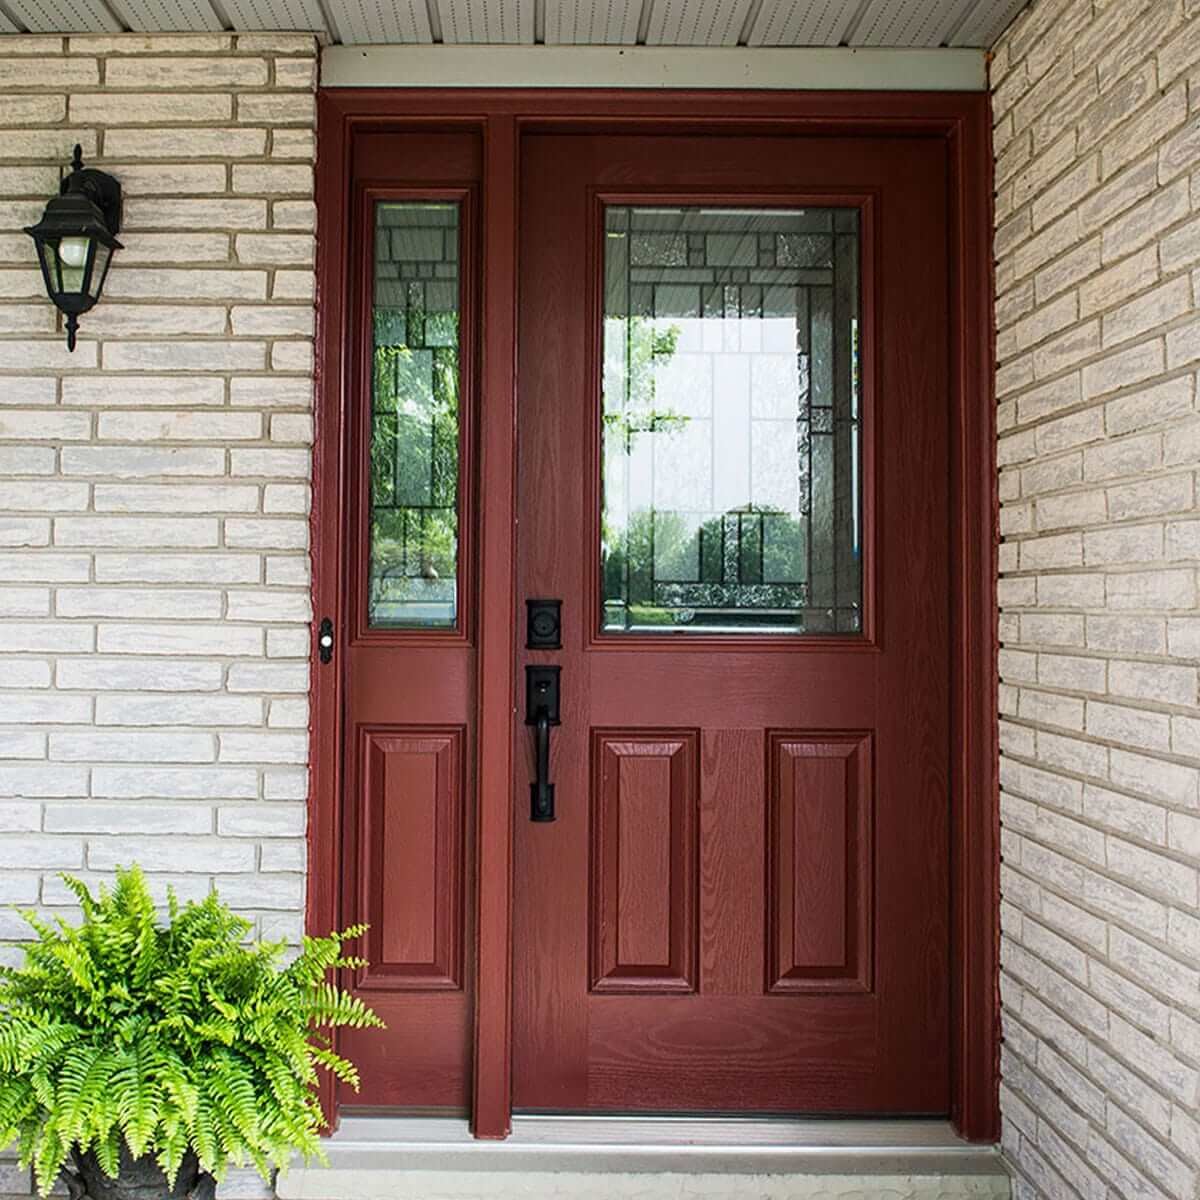 Close Up of Entry Way of Home Showcasing New Custom Made Fiberglass Entry Door